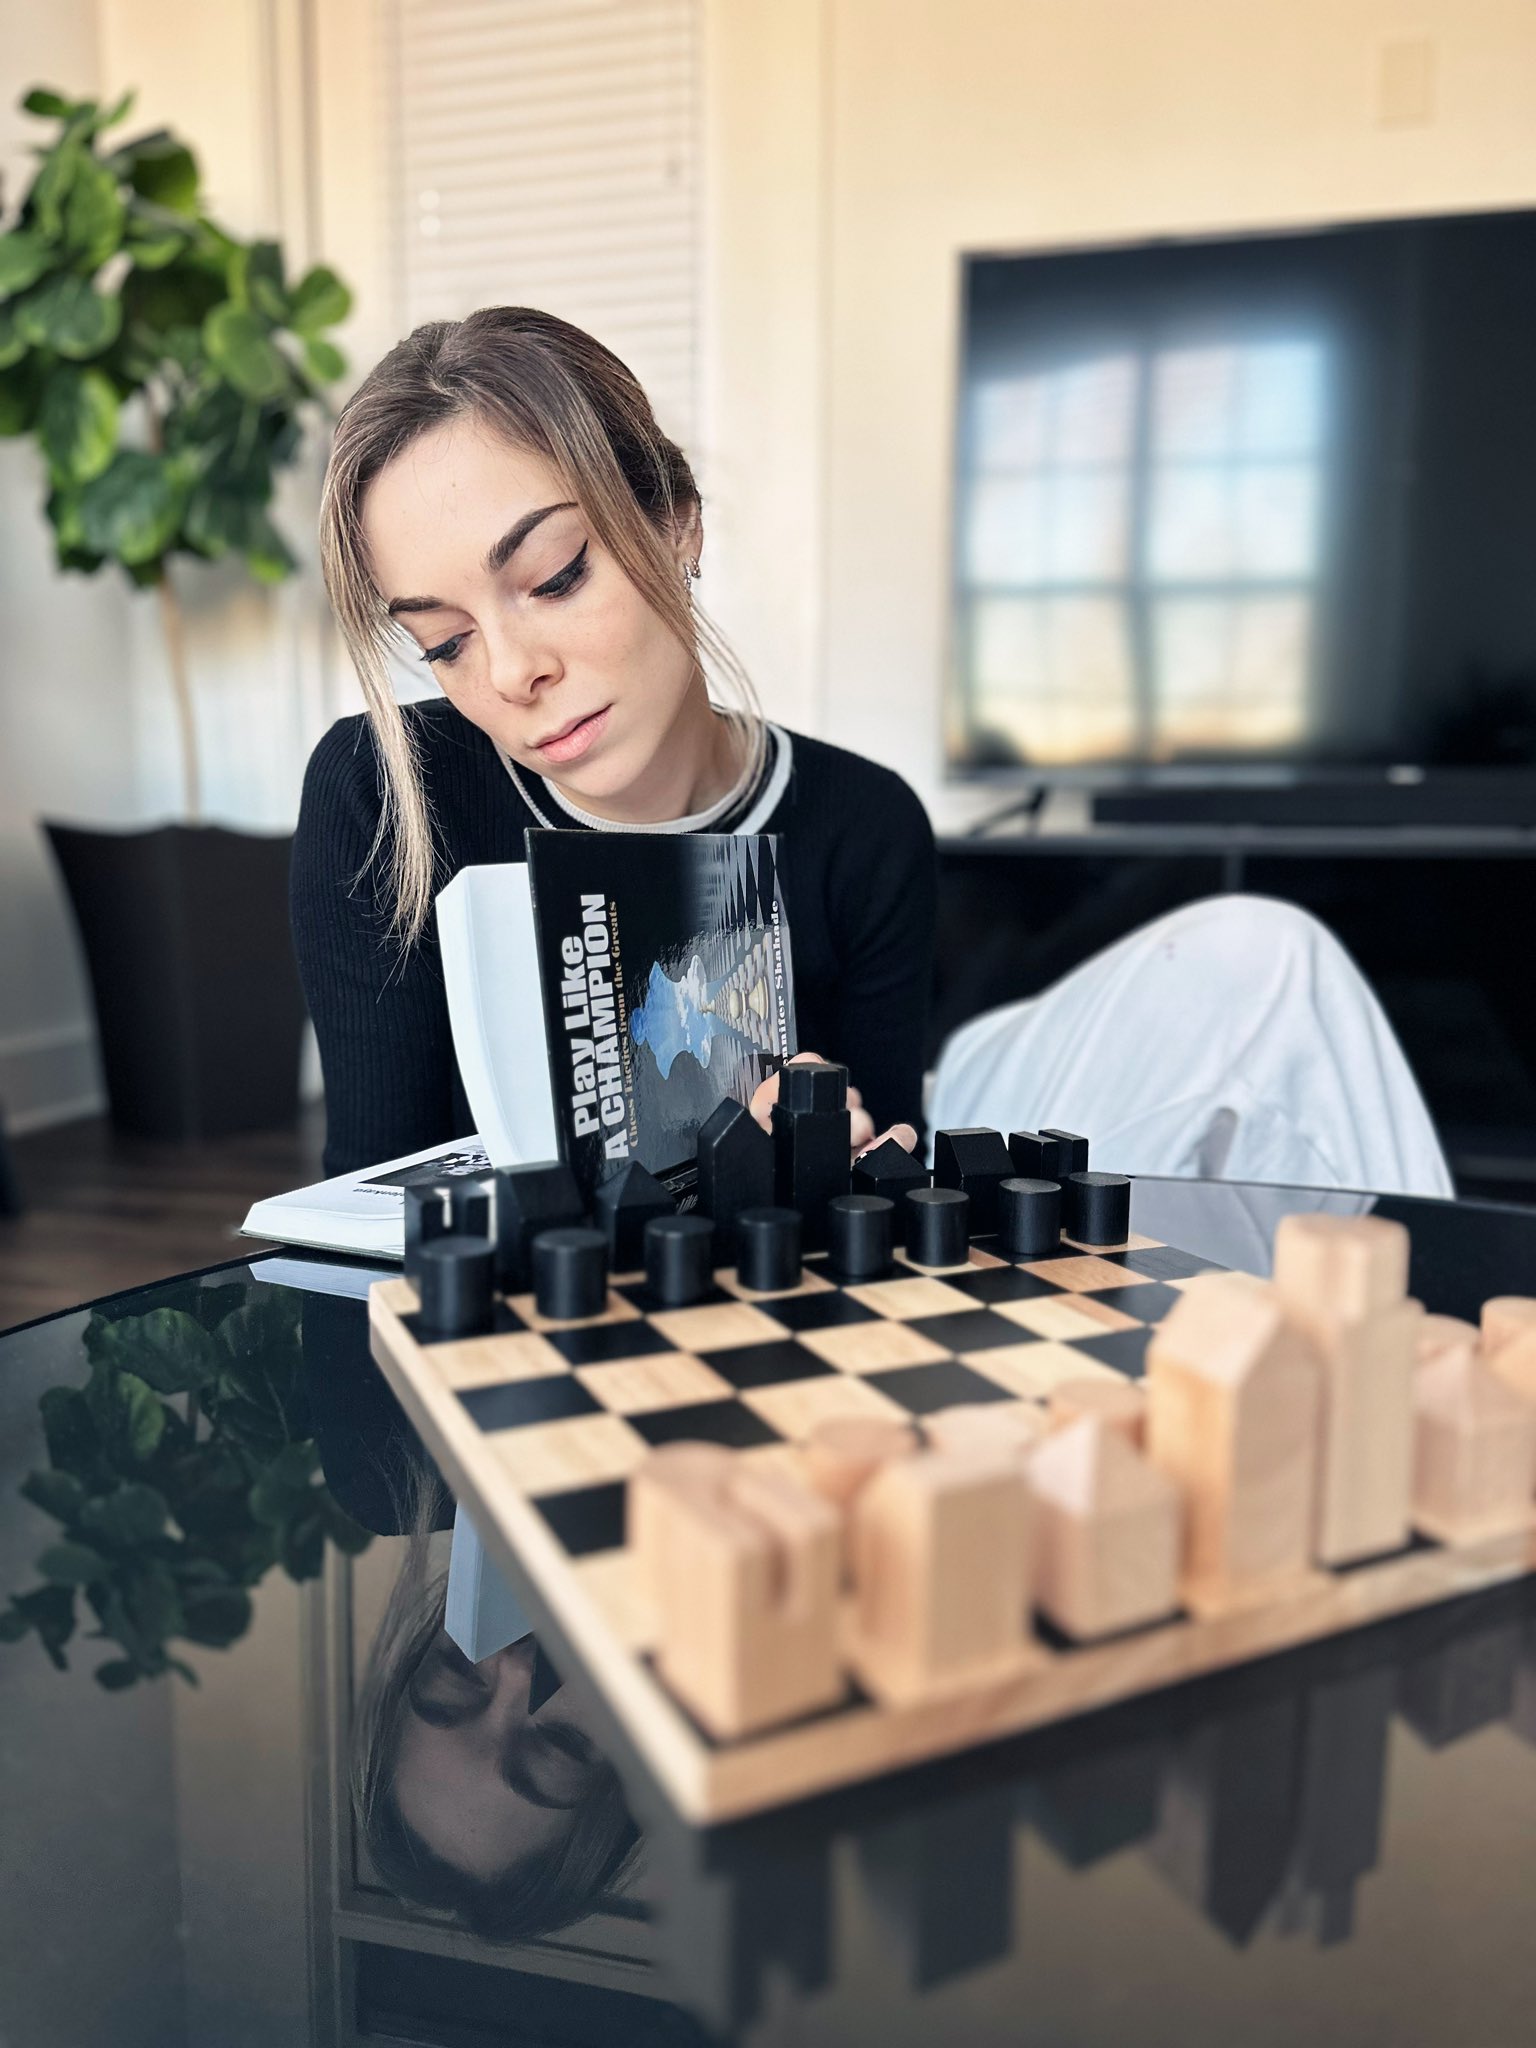 WGM Belenkaya tries to contain herself watching Hans : r/chess